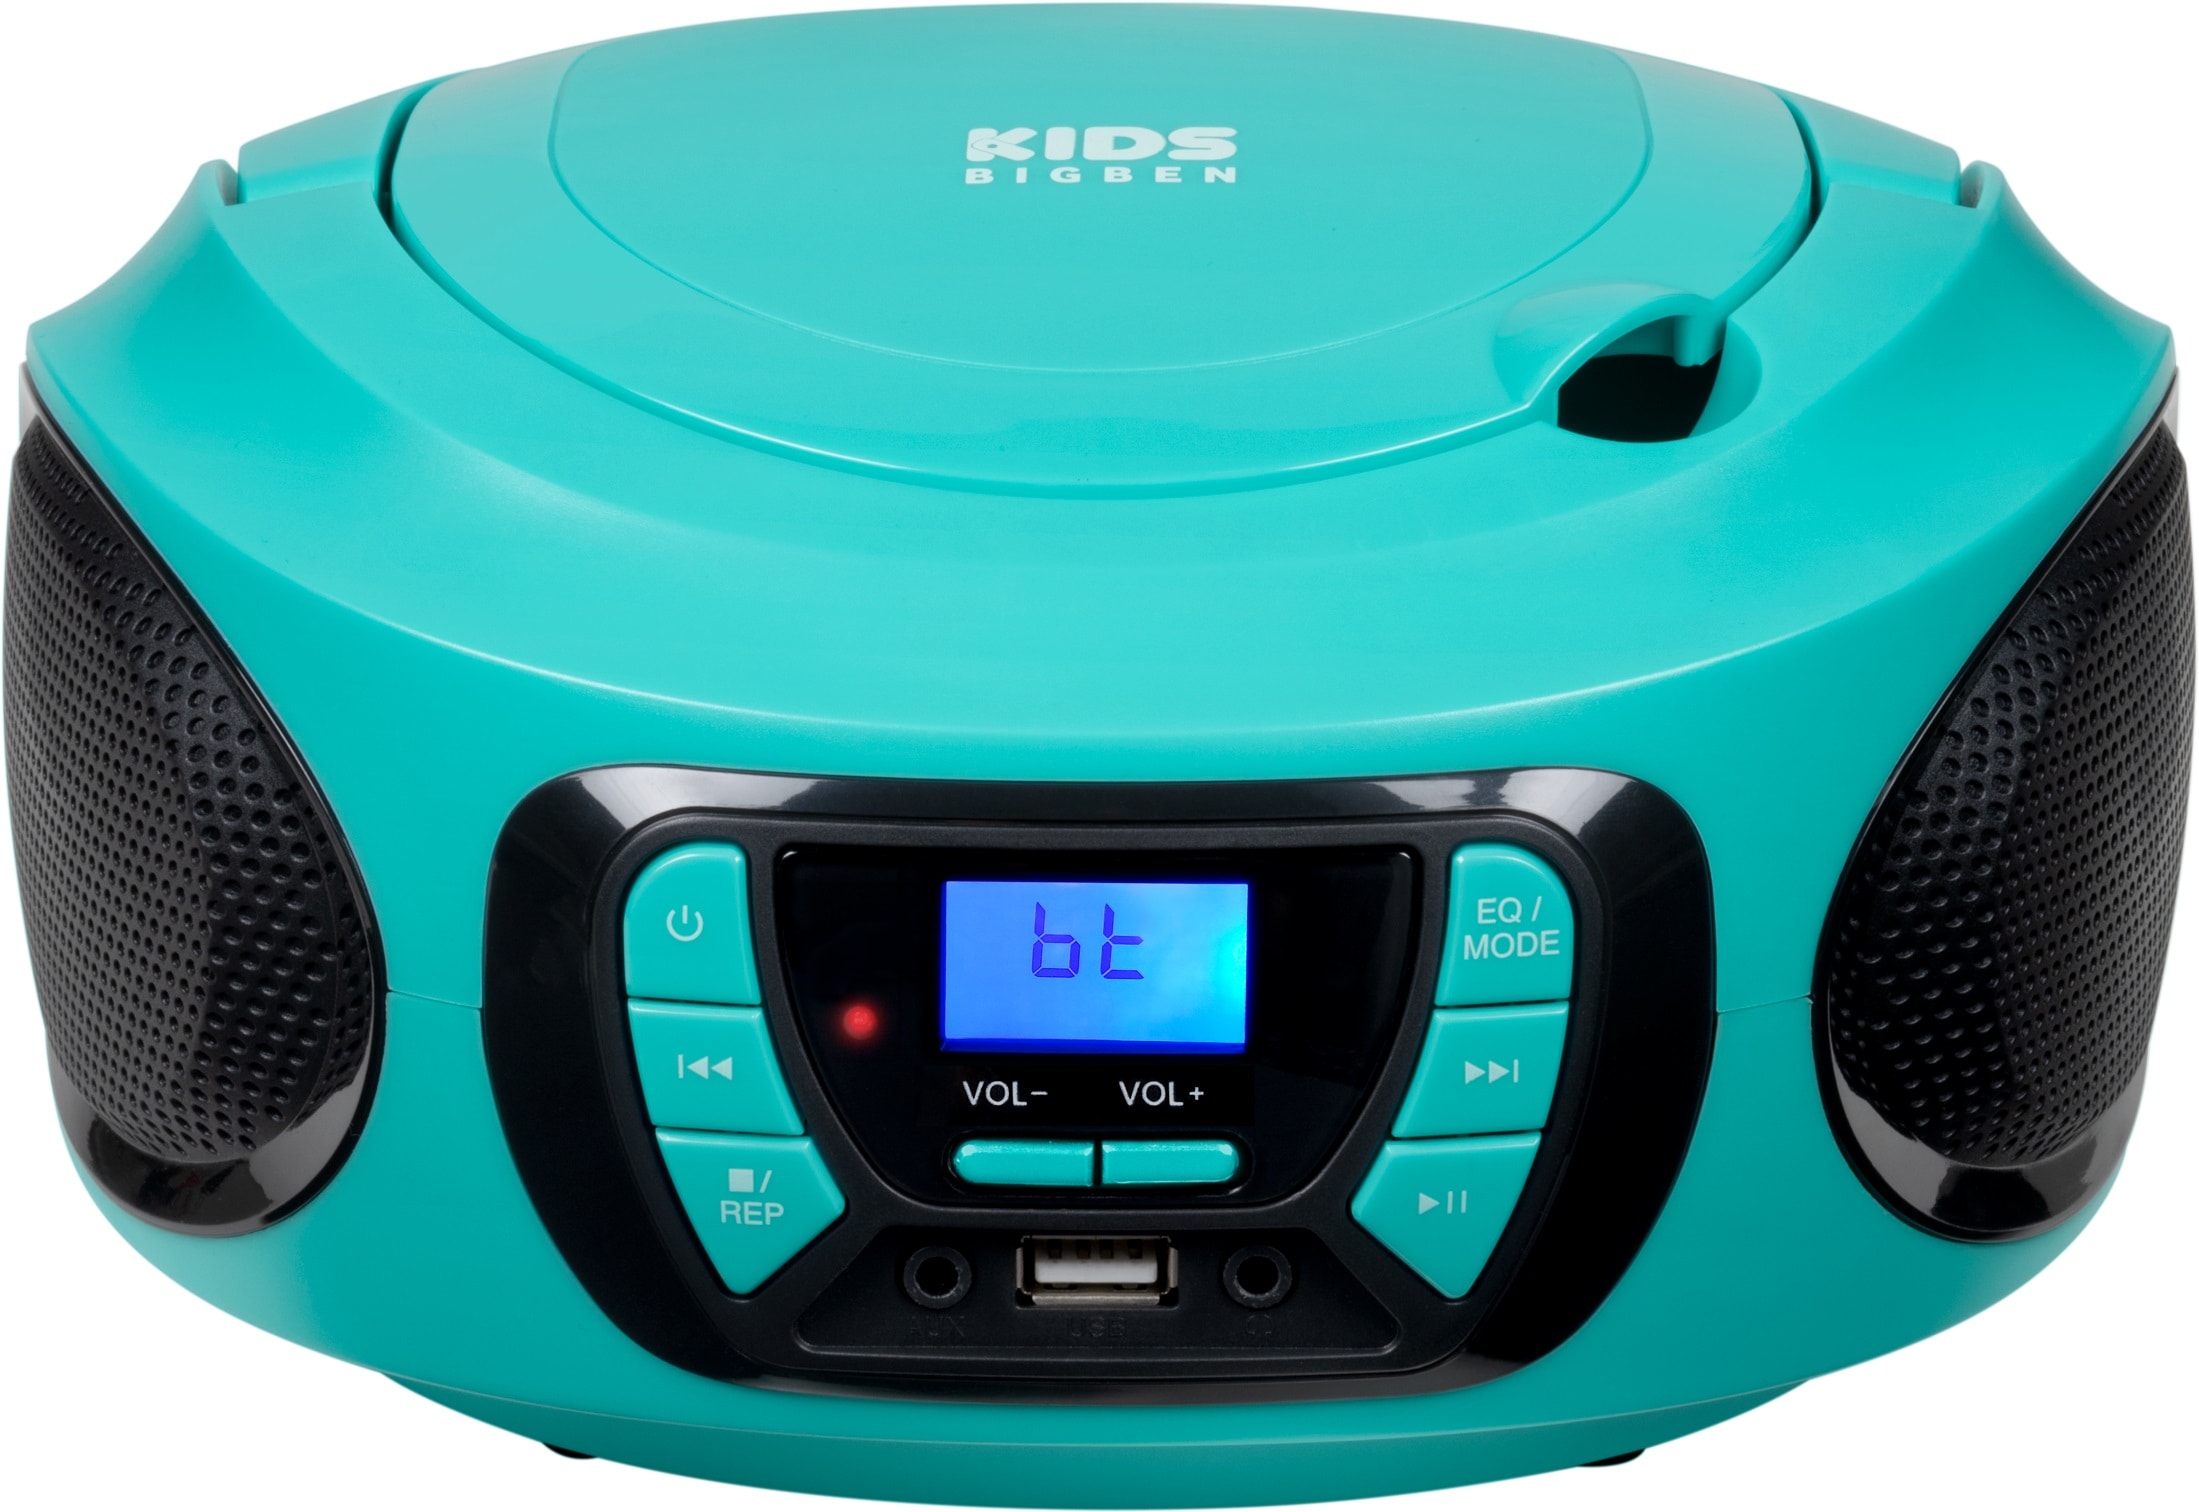 BigBen CD-Radiorecorder »Kids Tragbares CD/Radio AU387315 USB/BT blau«, ( Bluetooth FM-Tuner) auf Rechnung kaufen